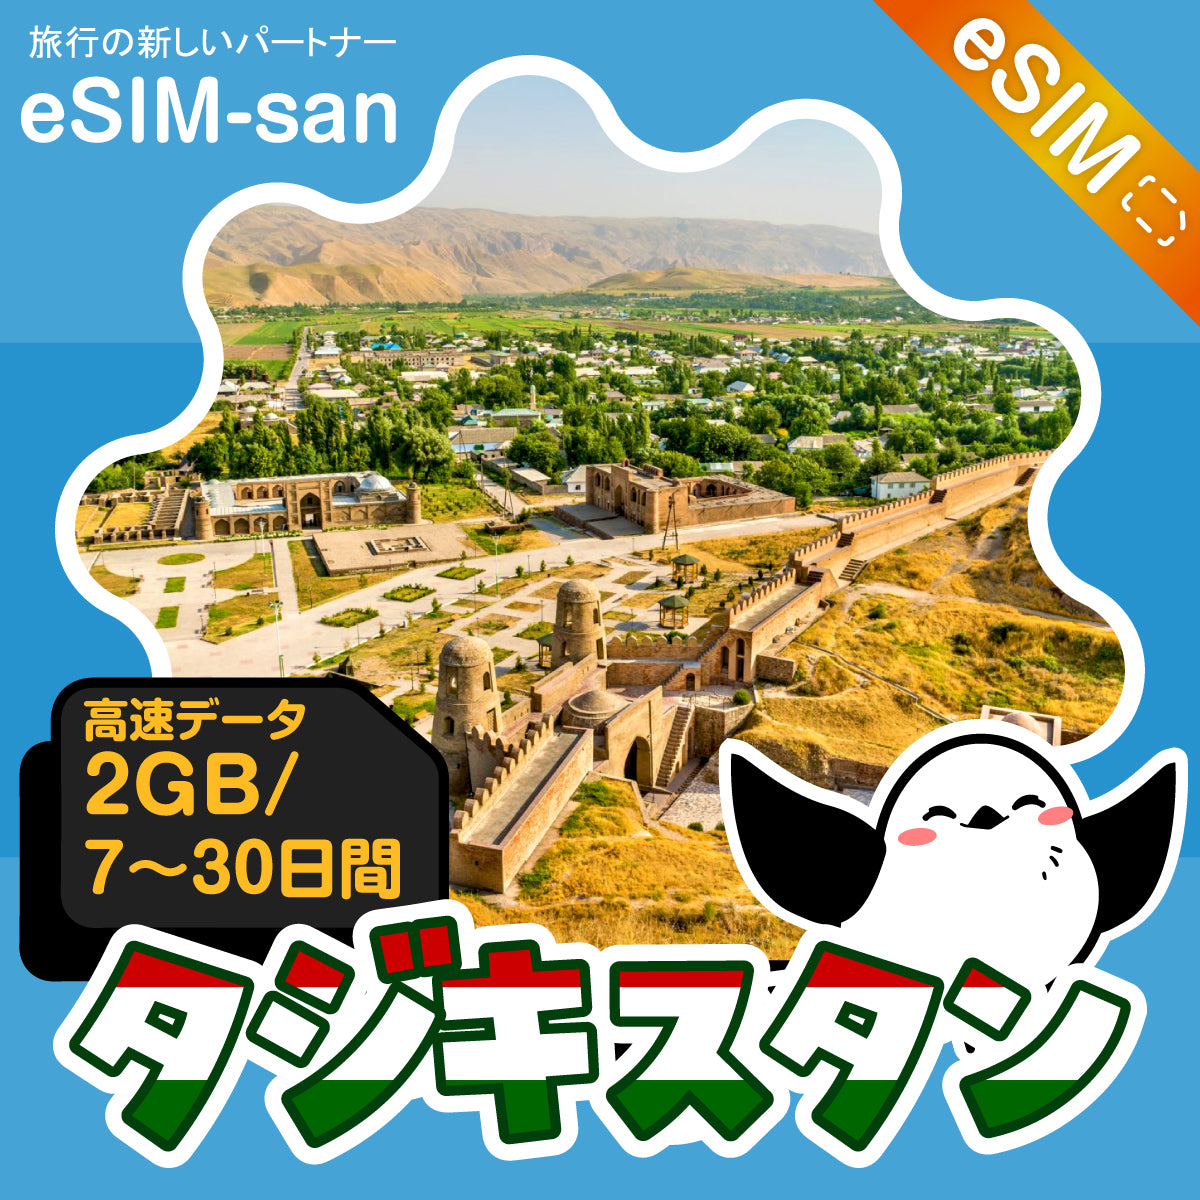 タジキスタンeSIMの2GB/dayプラン画像_eSIM-san